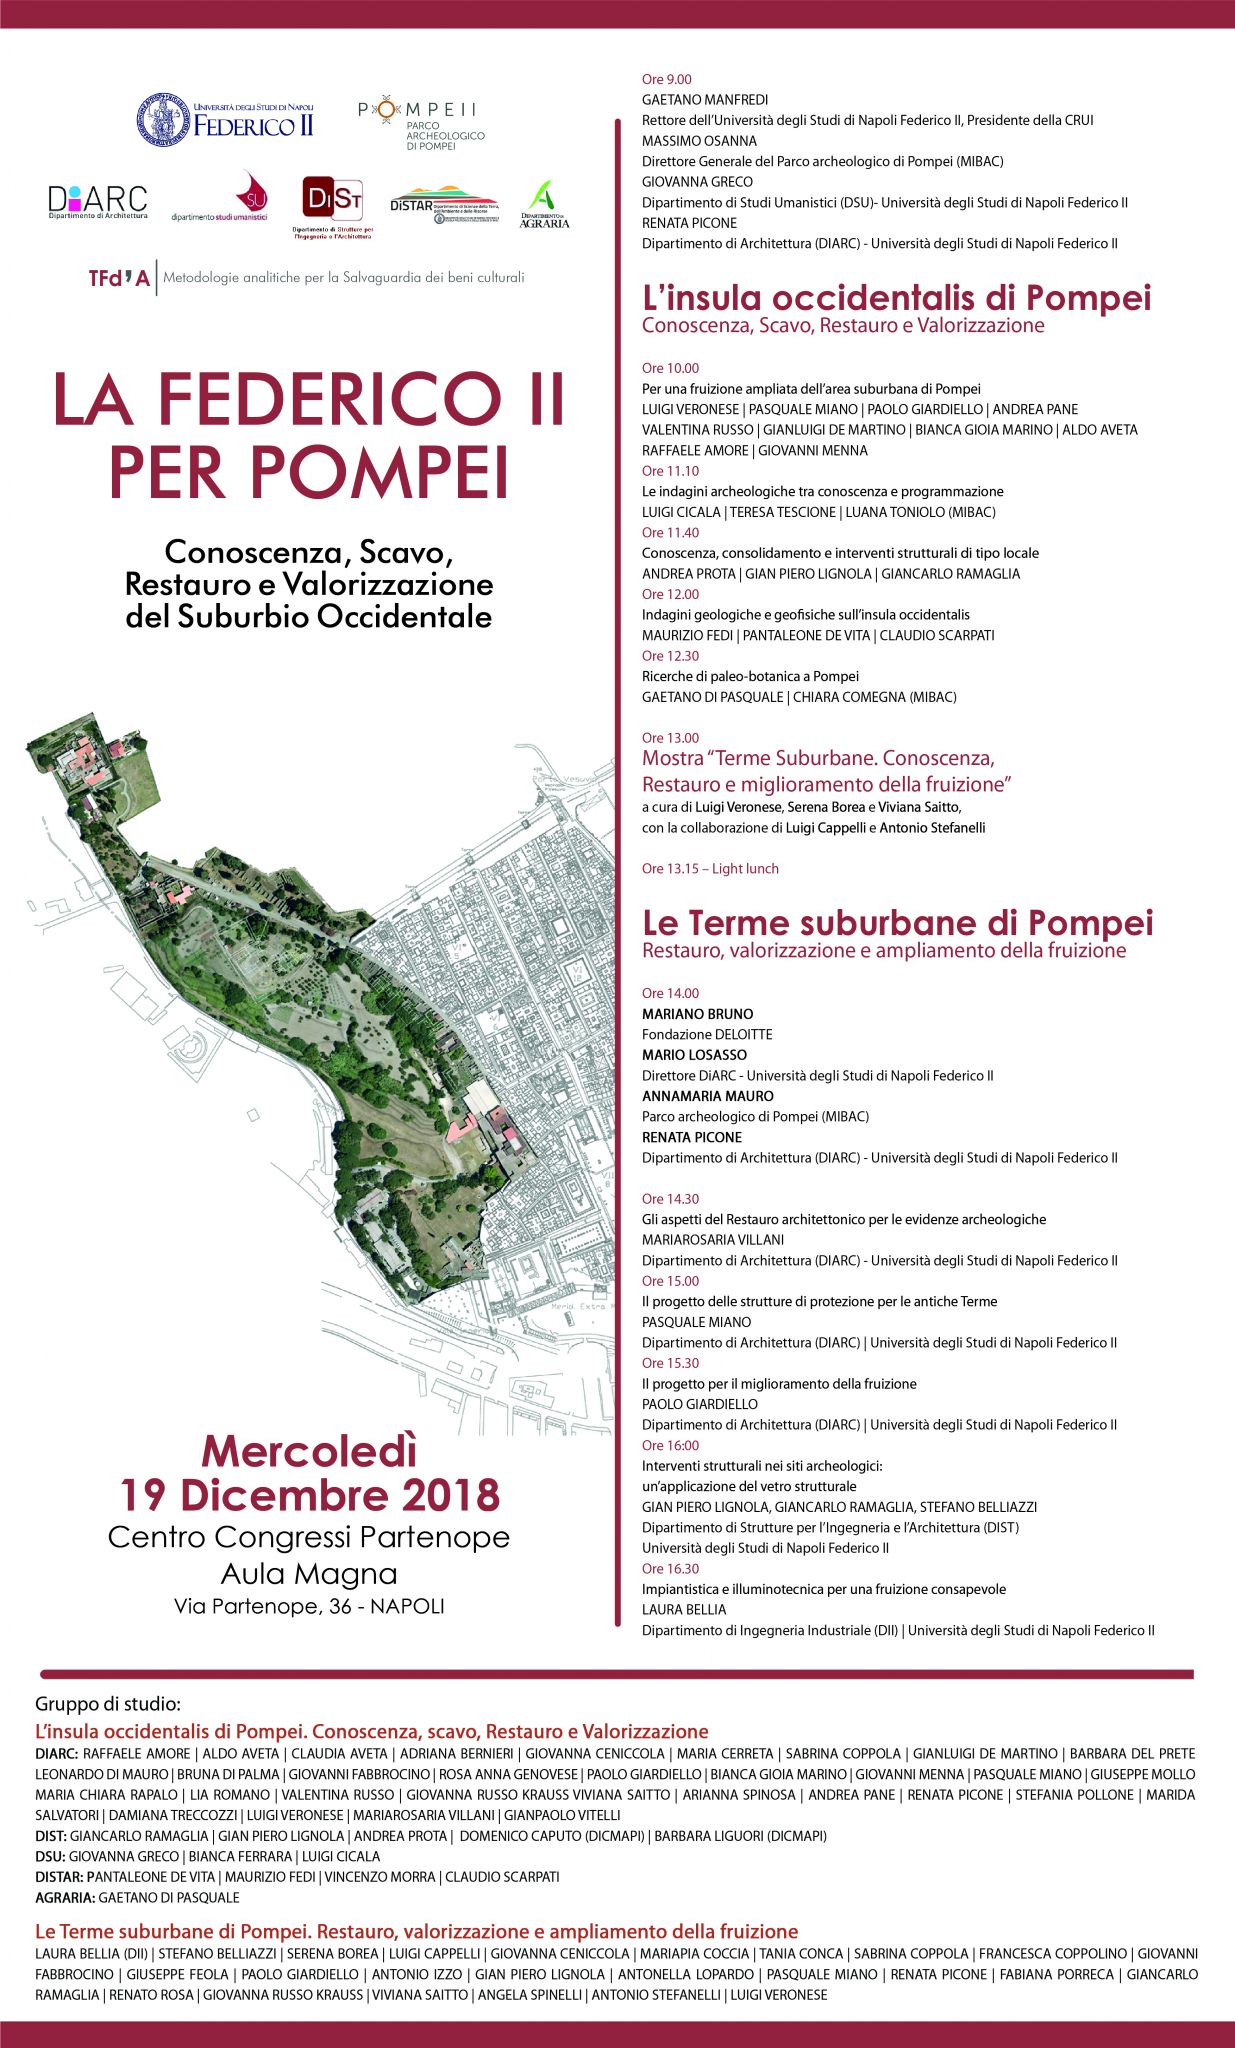 Federico II per Pompei: mercoledì 19 dicembre al Centro congressi di via Partenope